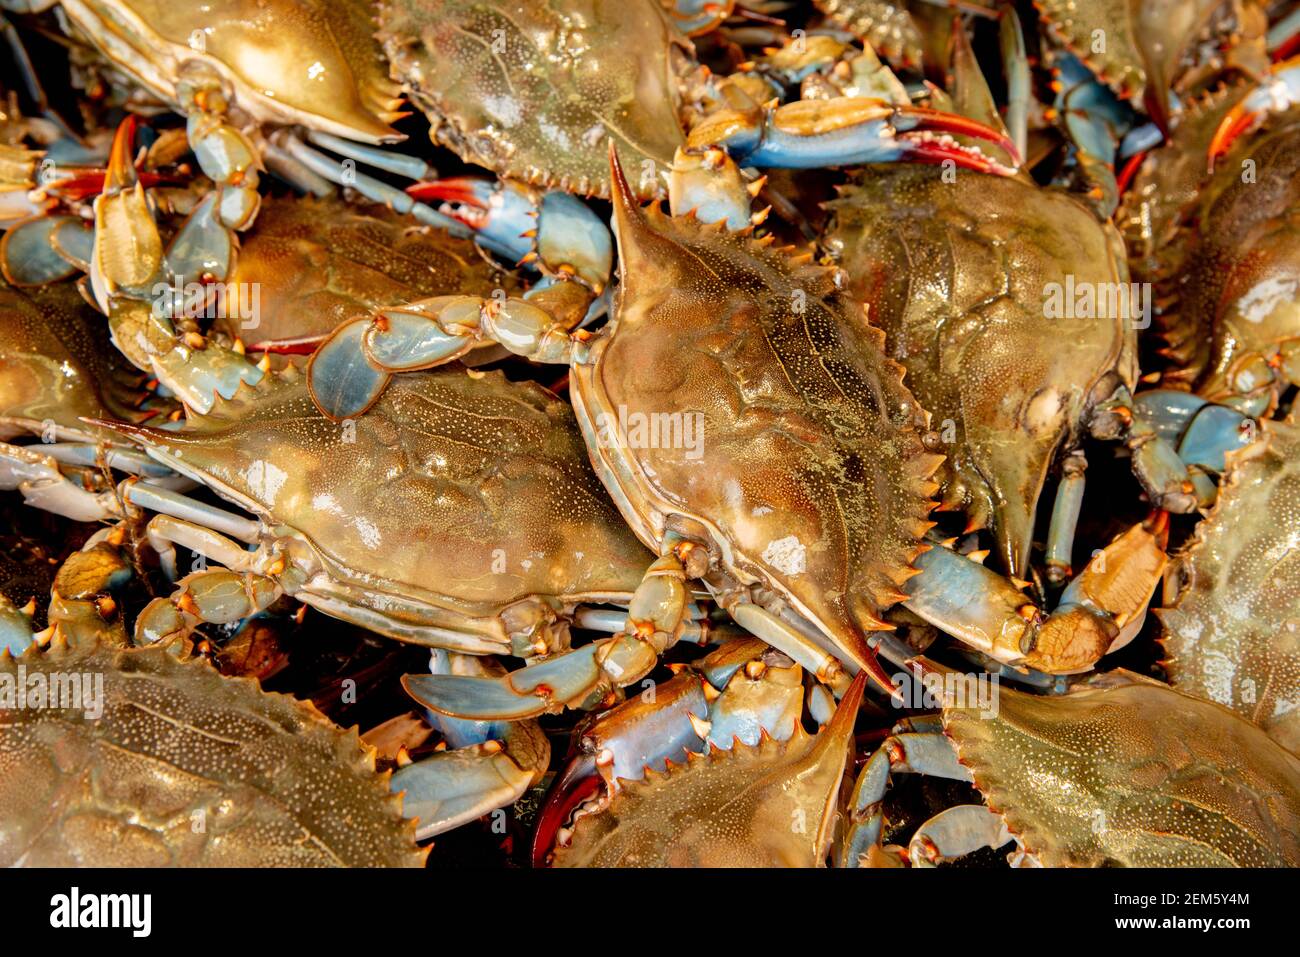 Blue Claw Crab Callinectes sapidus Stock Photo